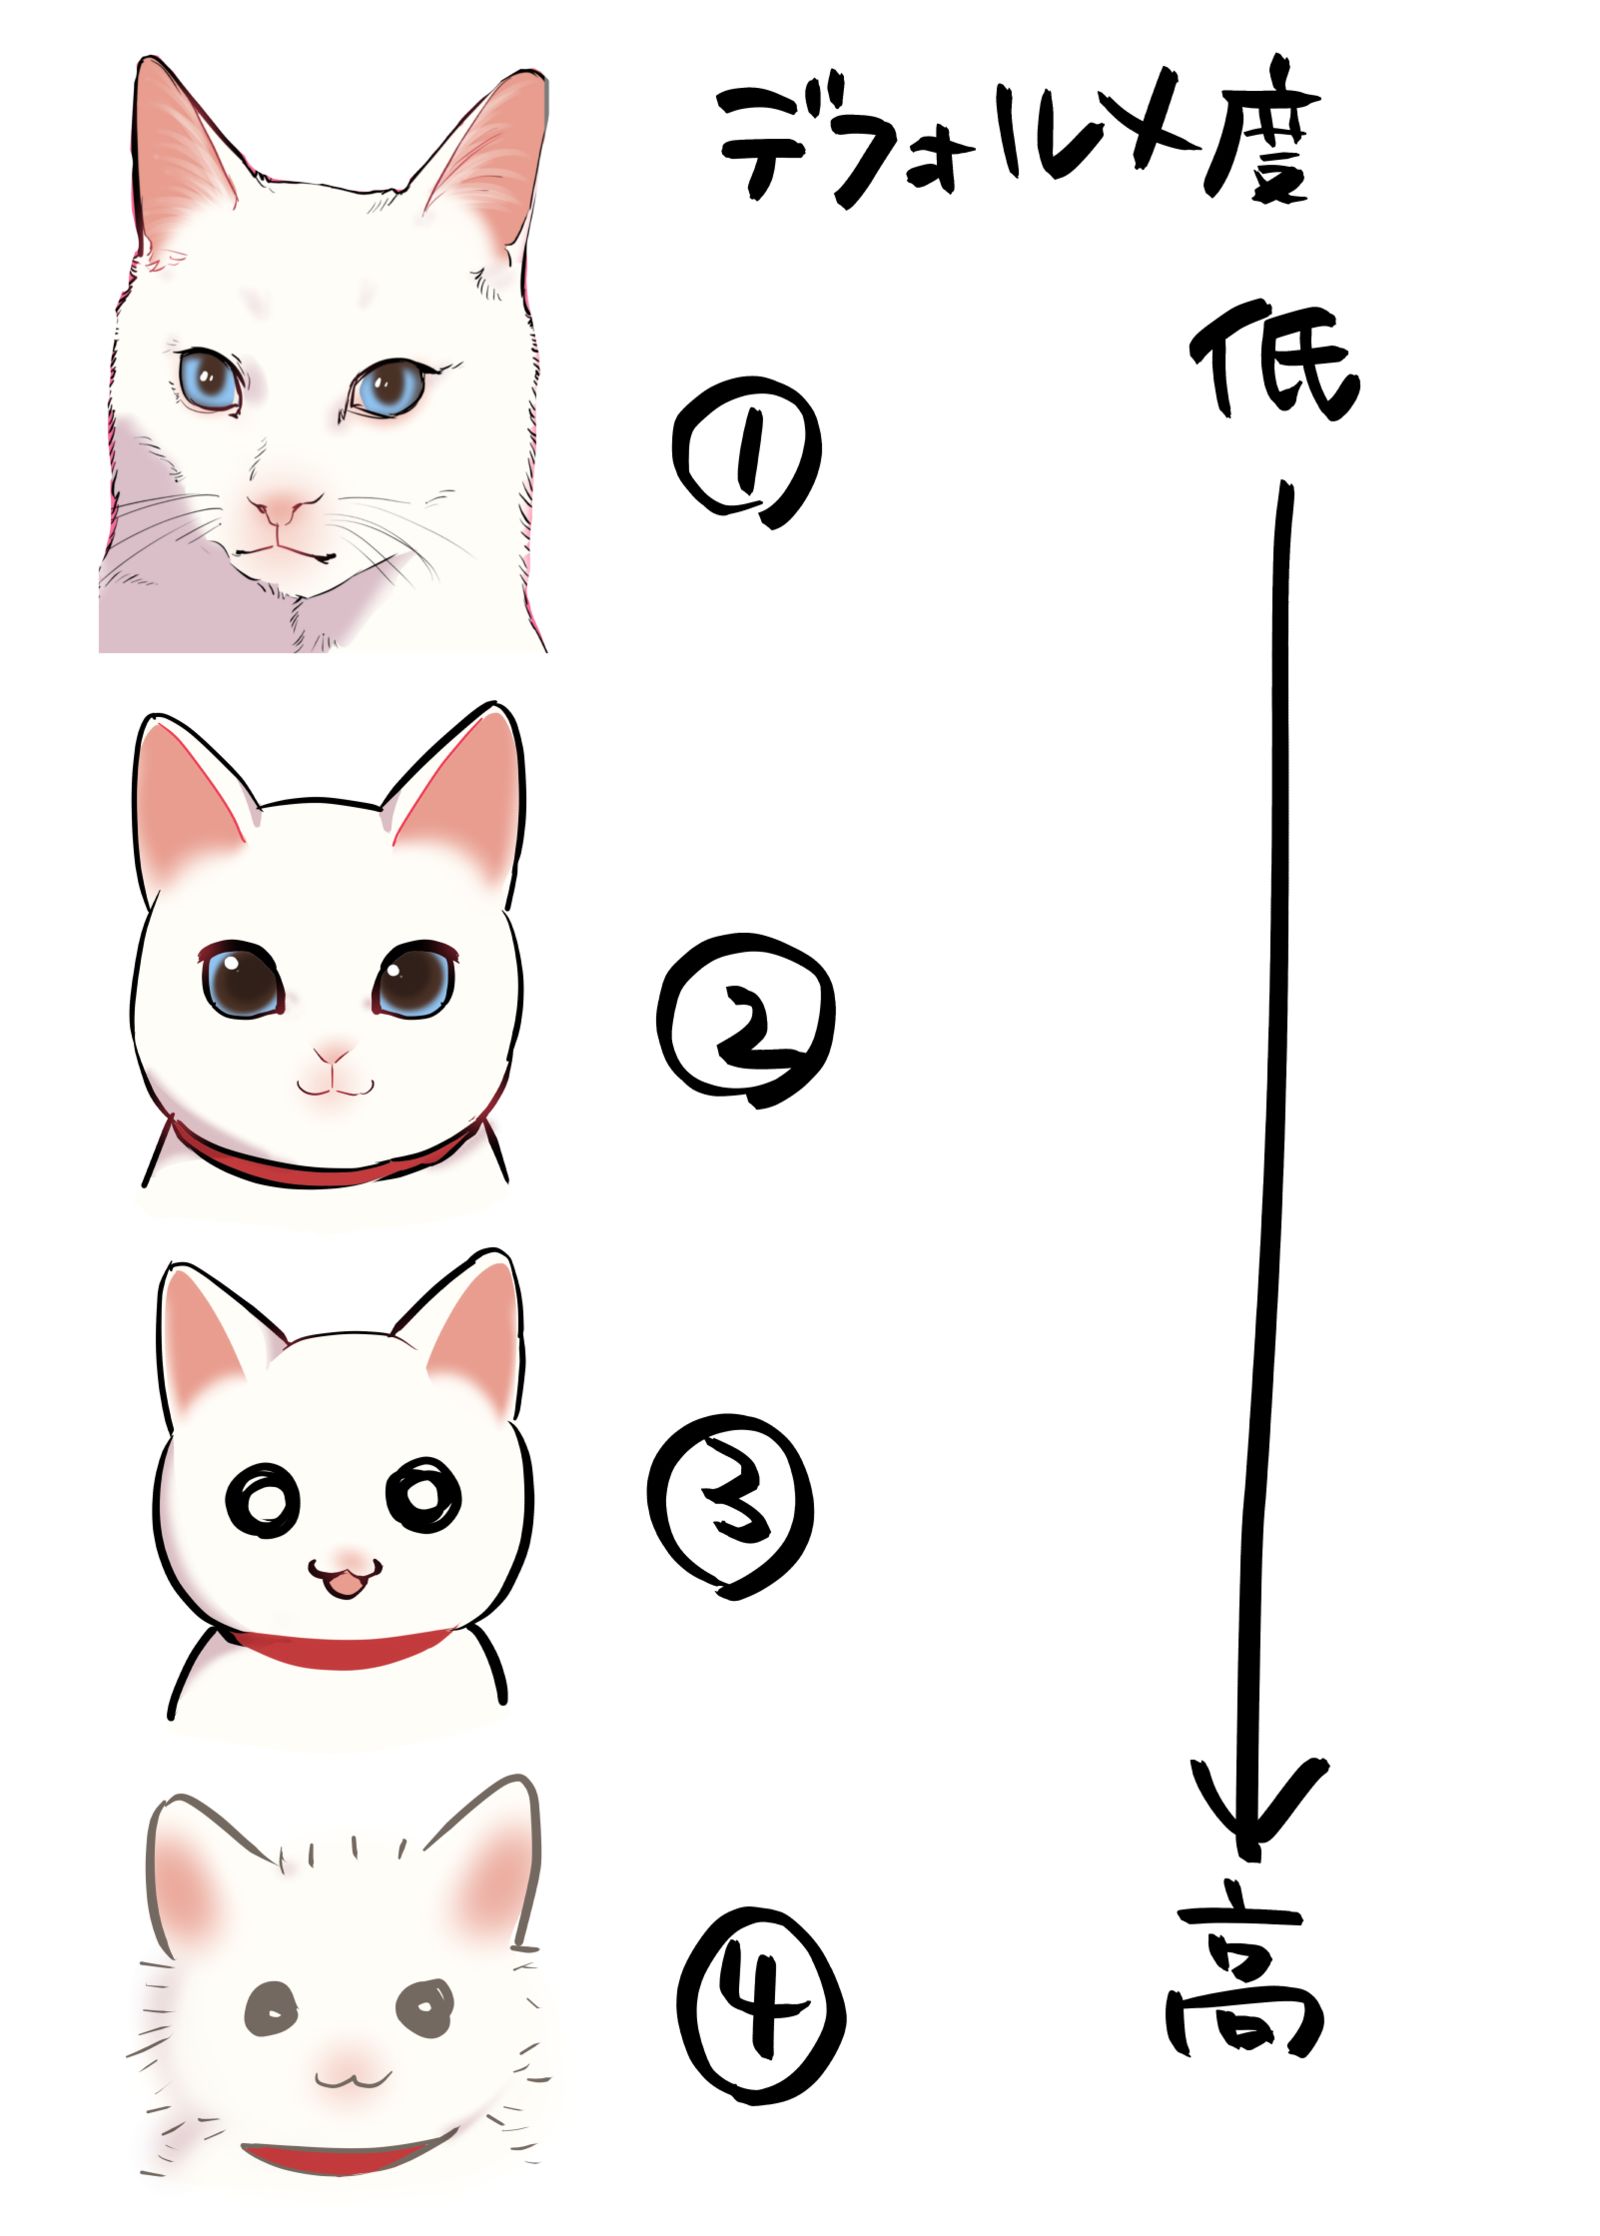 【问卷调查】猫作画变形4变化